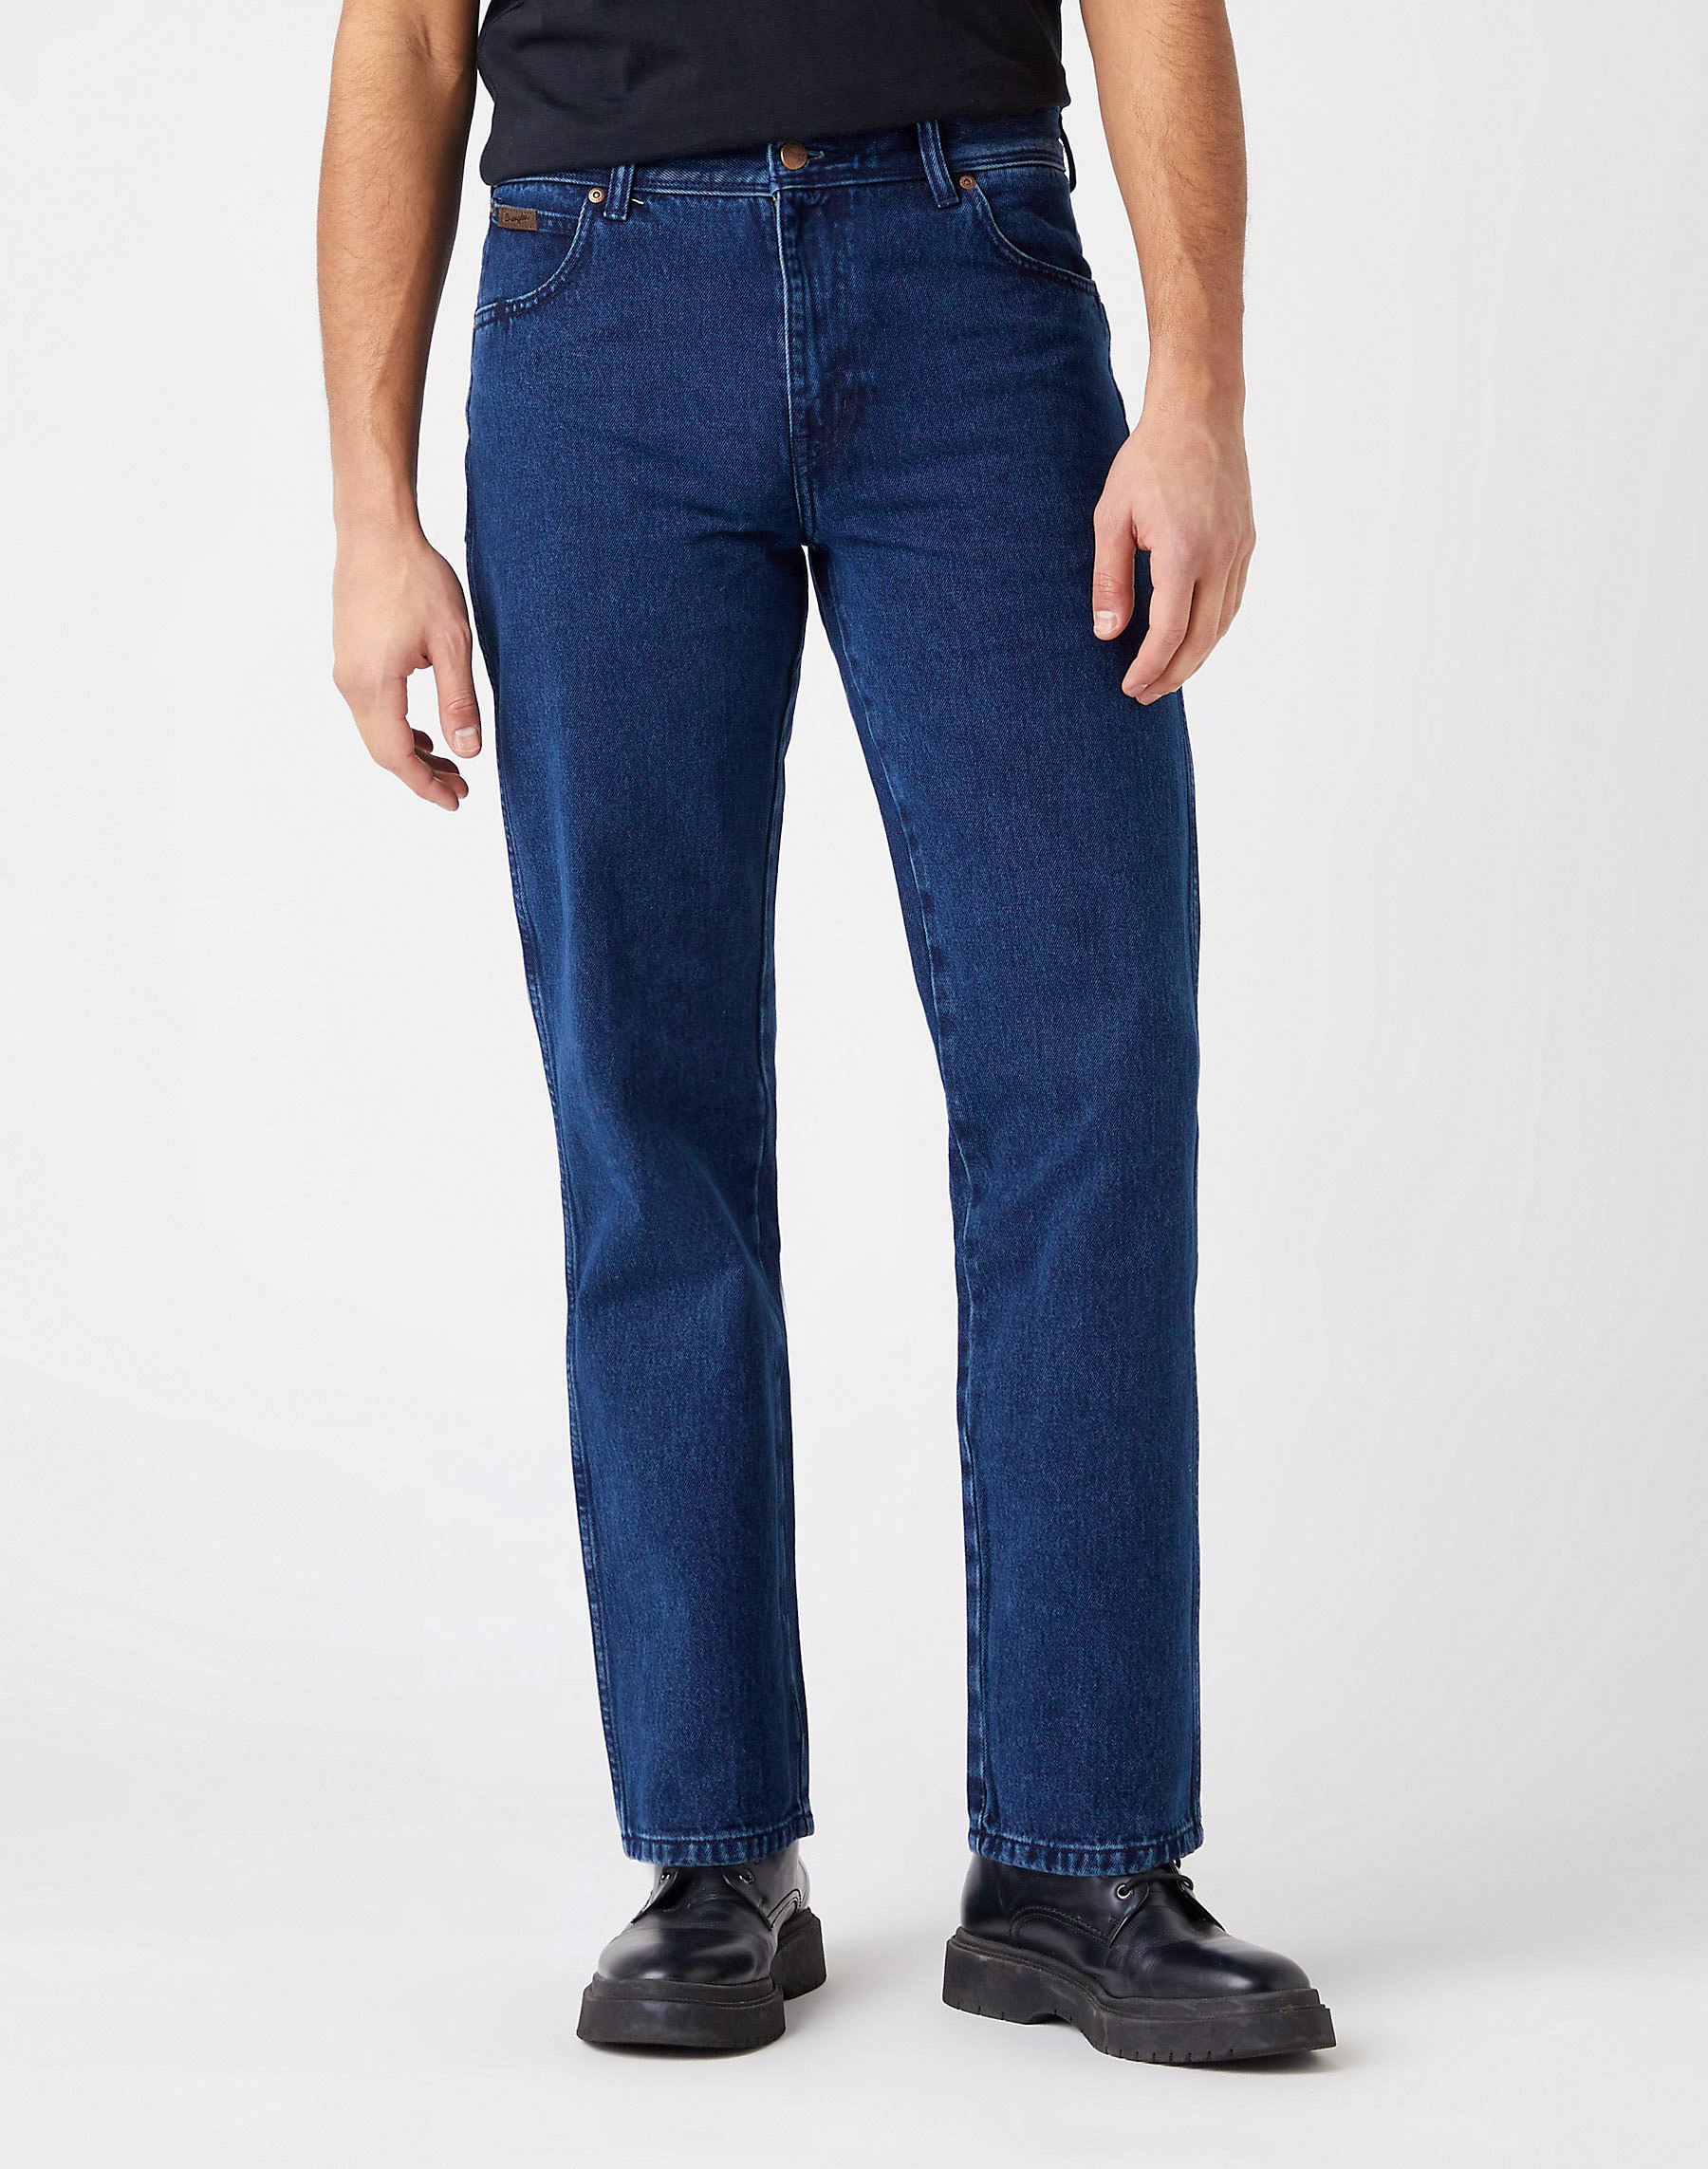 privacy Poging Prelude Wrangler Jeans für Herren | Online Shop | günstig kaufen